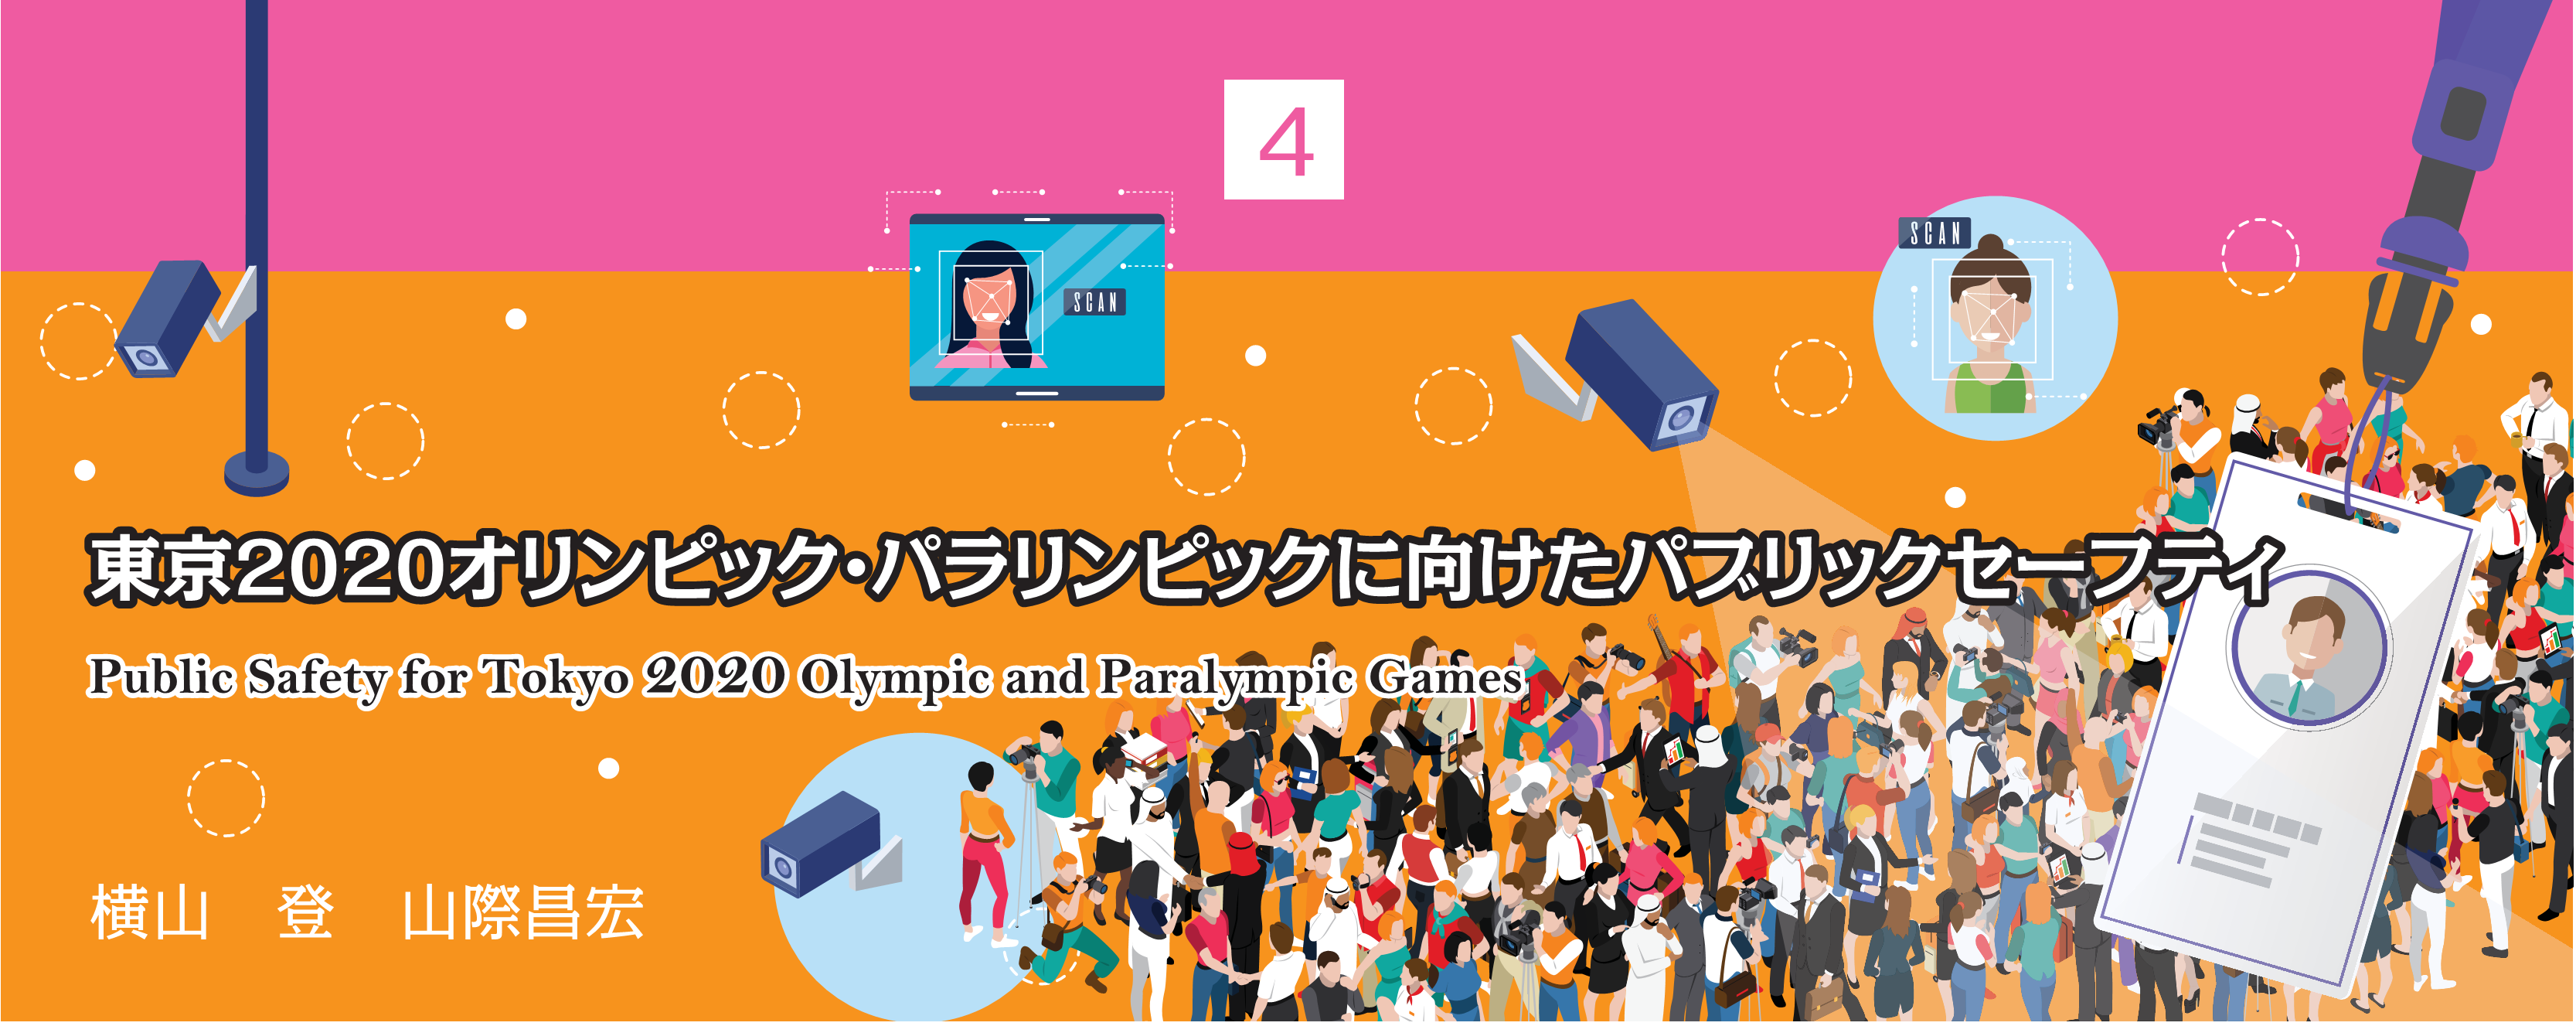 特別小特集 4. 東京2020オリンピック・パラリンピックに向けたパブリックセーフティ